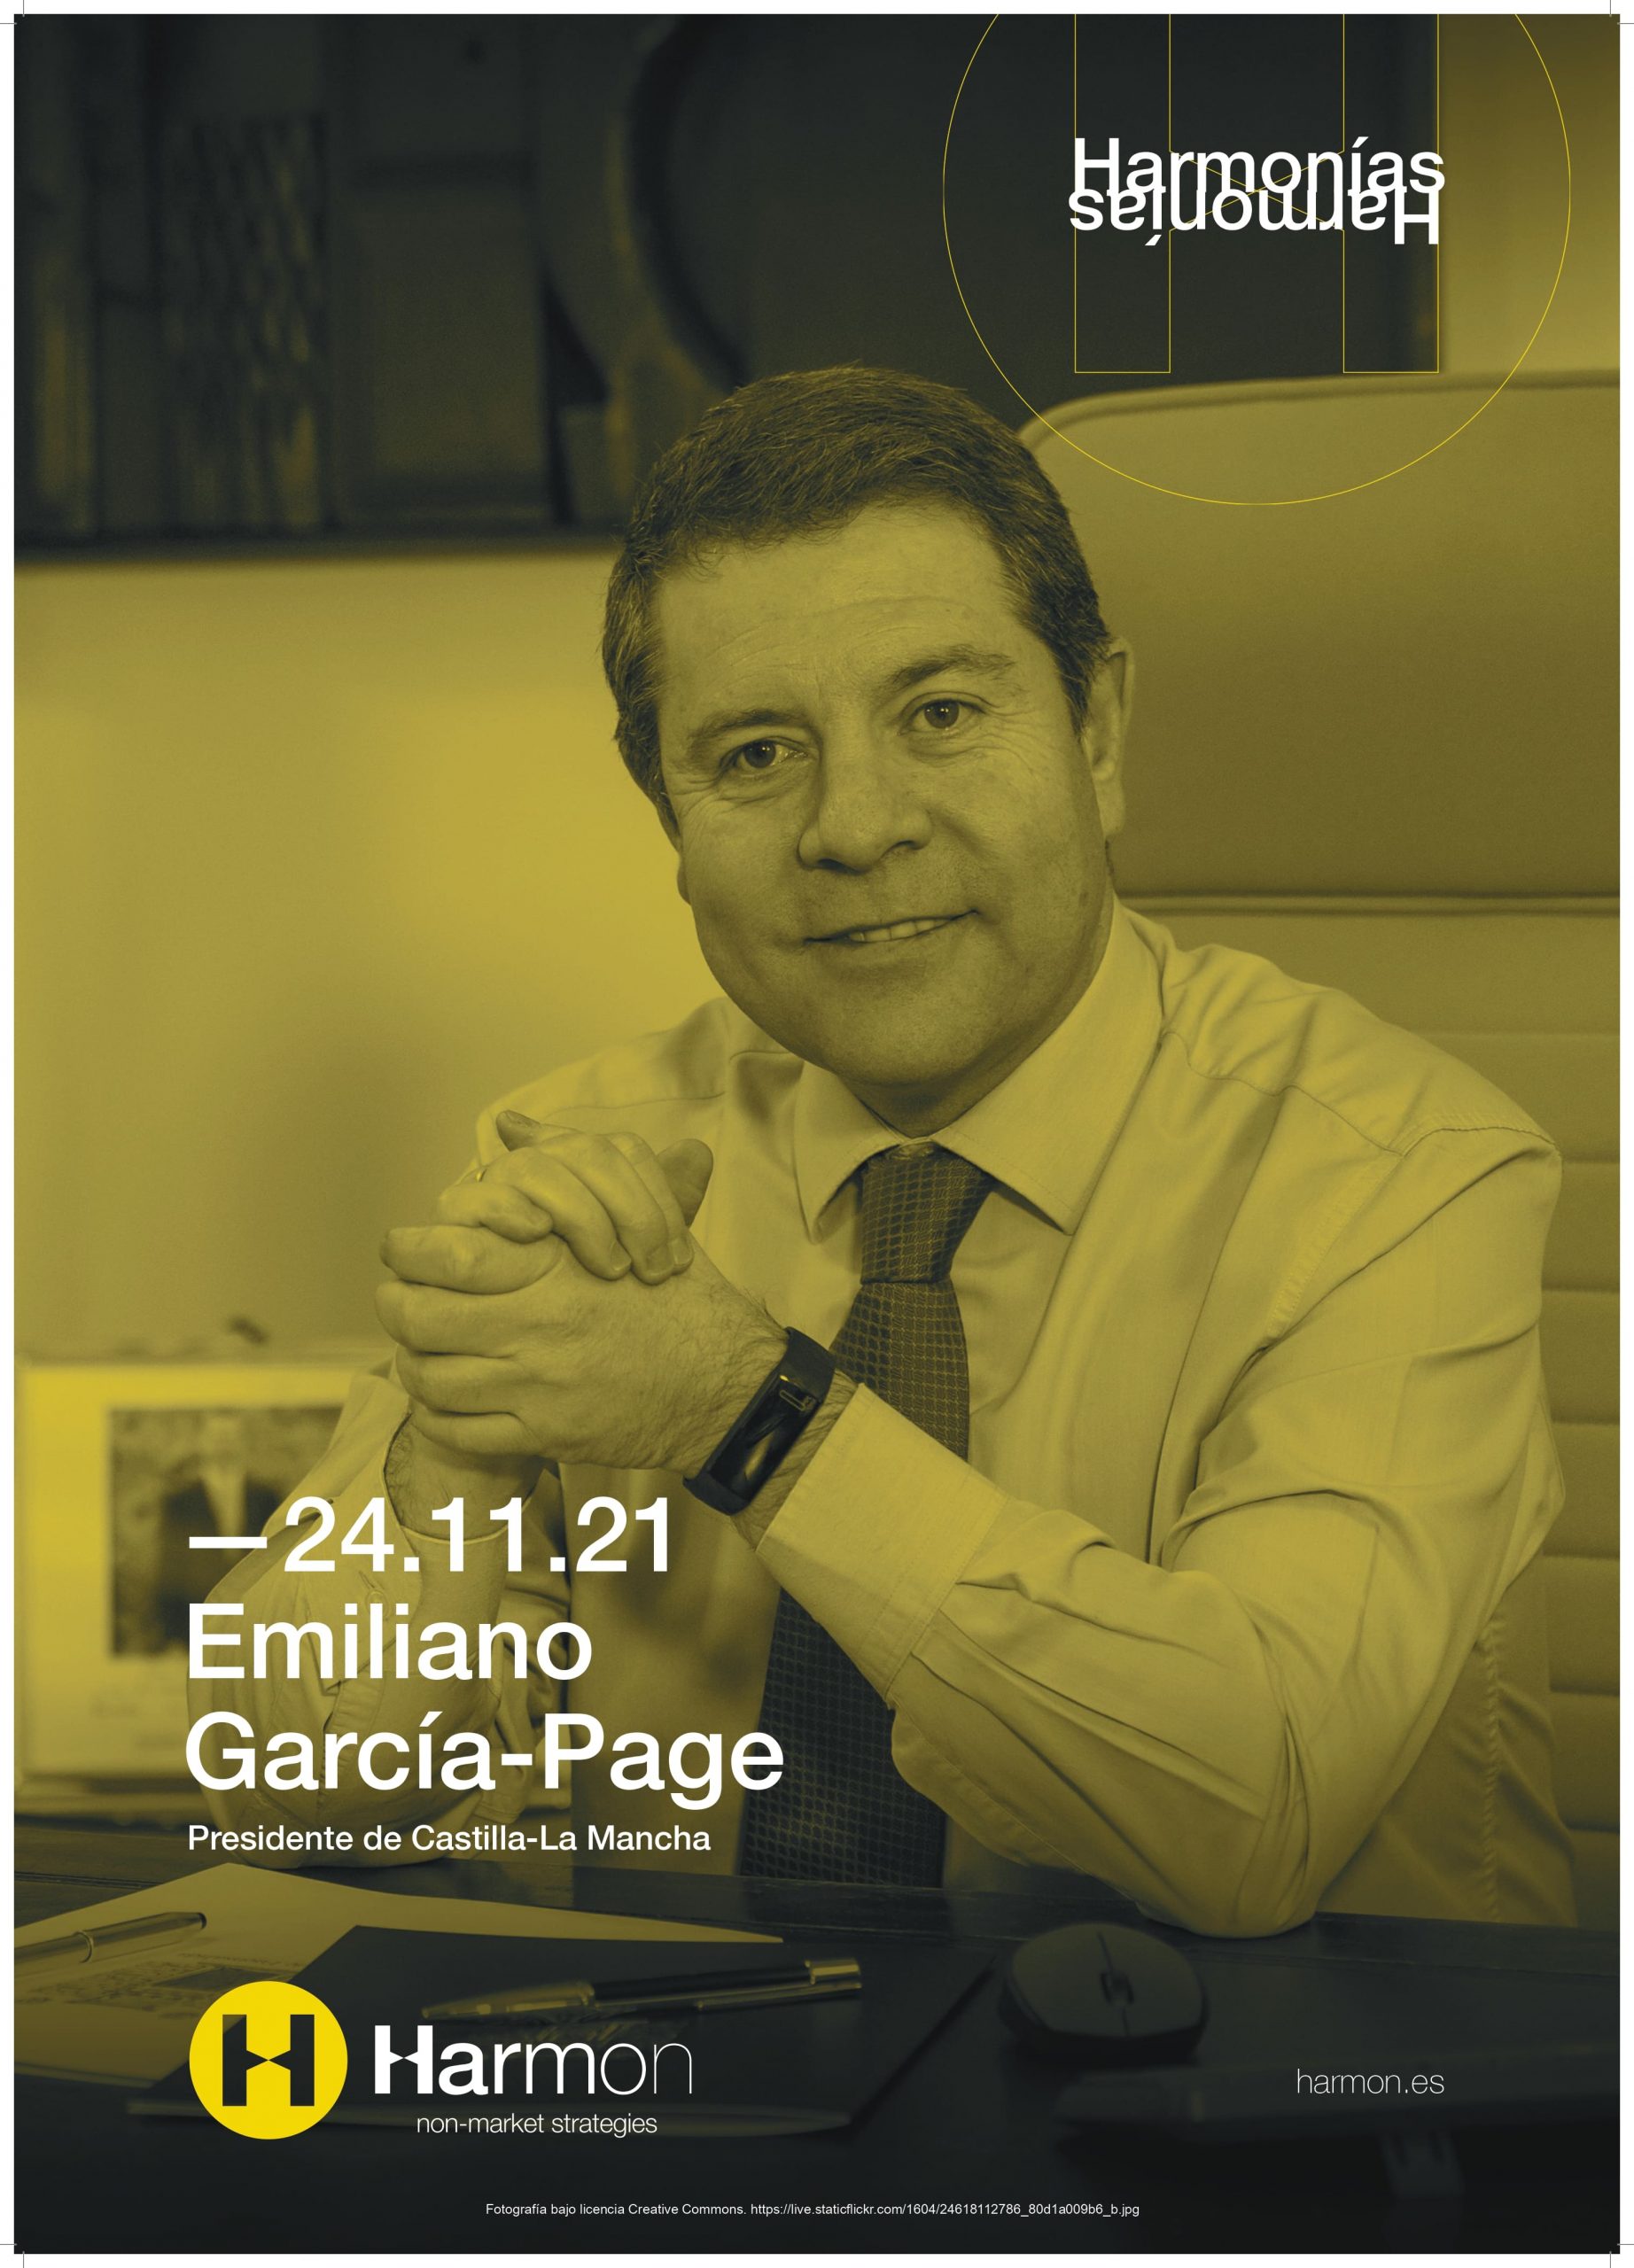 Emiliano García-Page